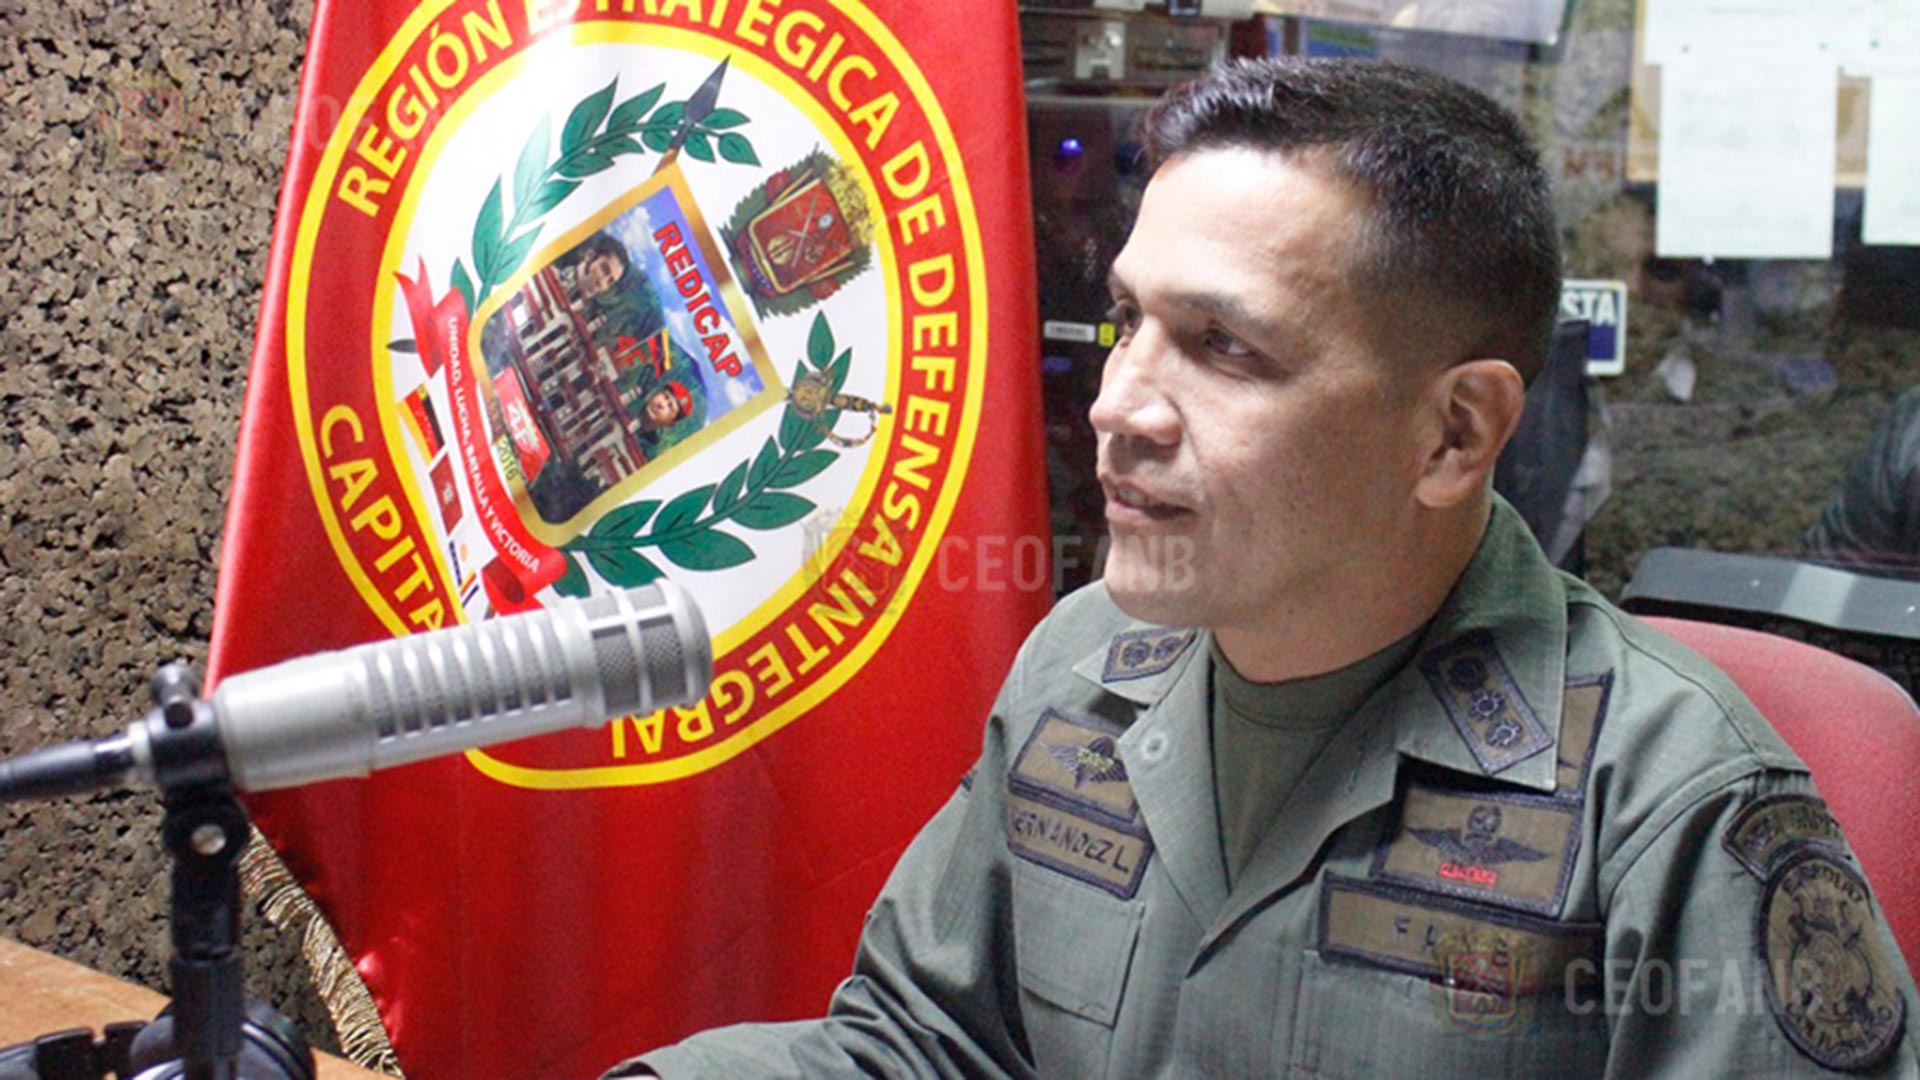 El MG Domingo Hernández podría ser el próximo comandante del ejército